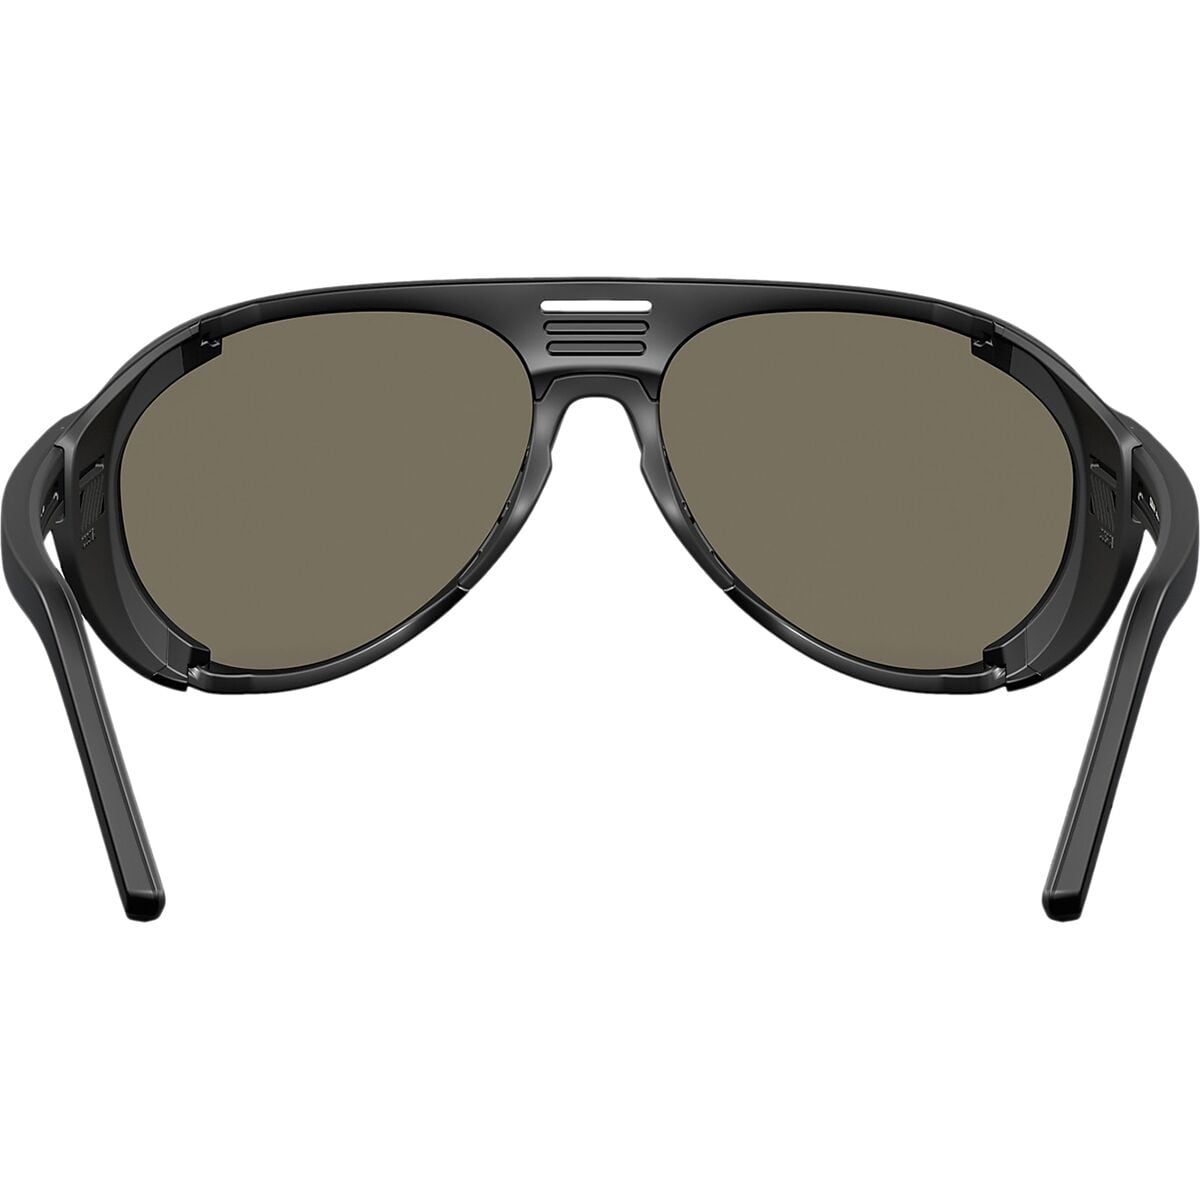 Costa Grand Catalina Polarized Sunglasses - Accessories